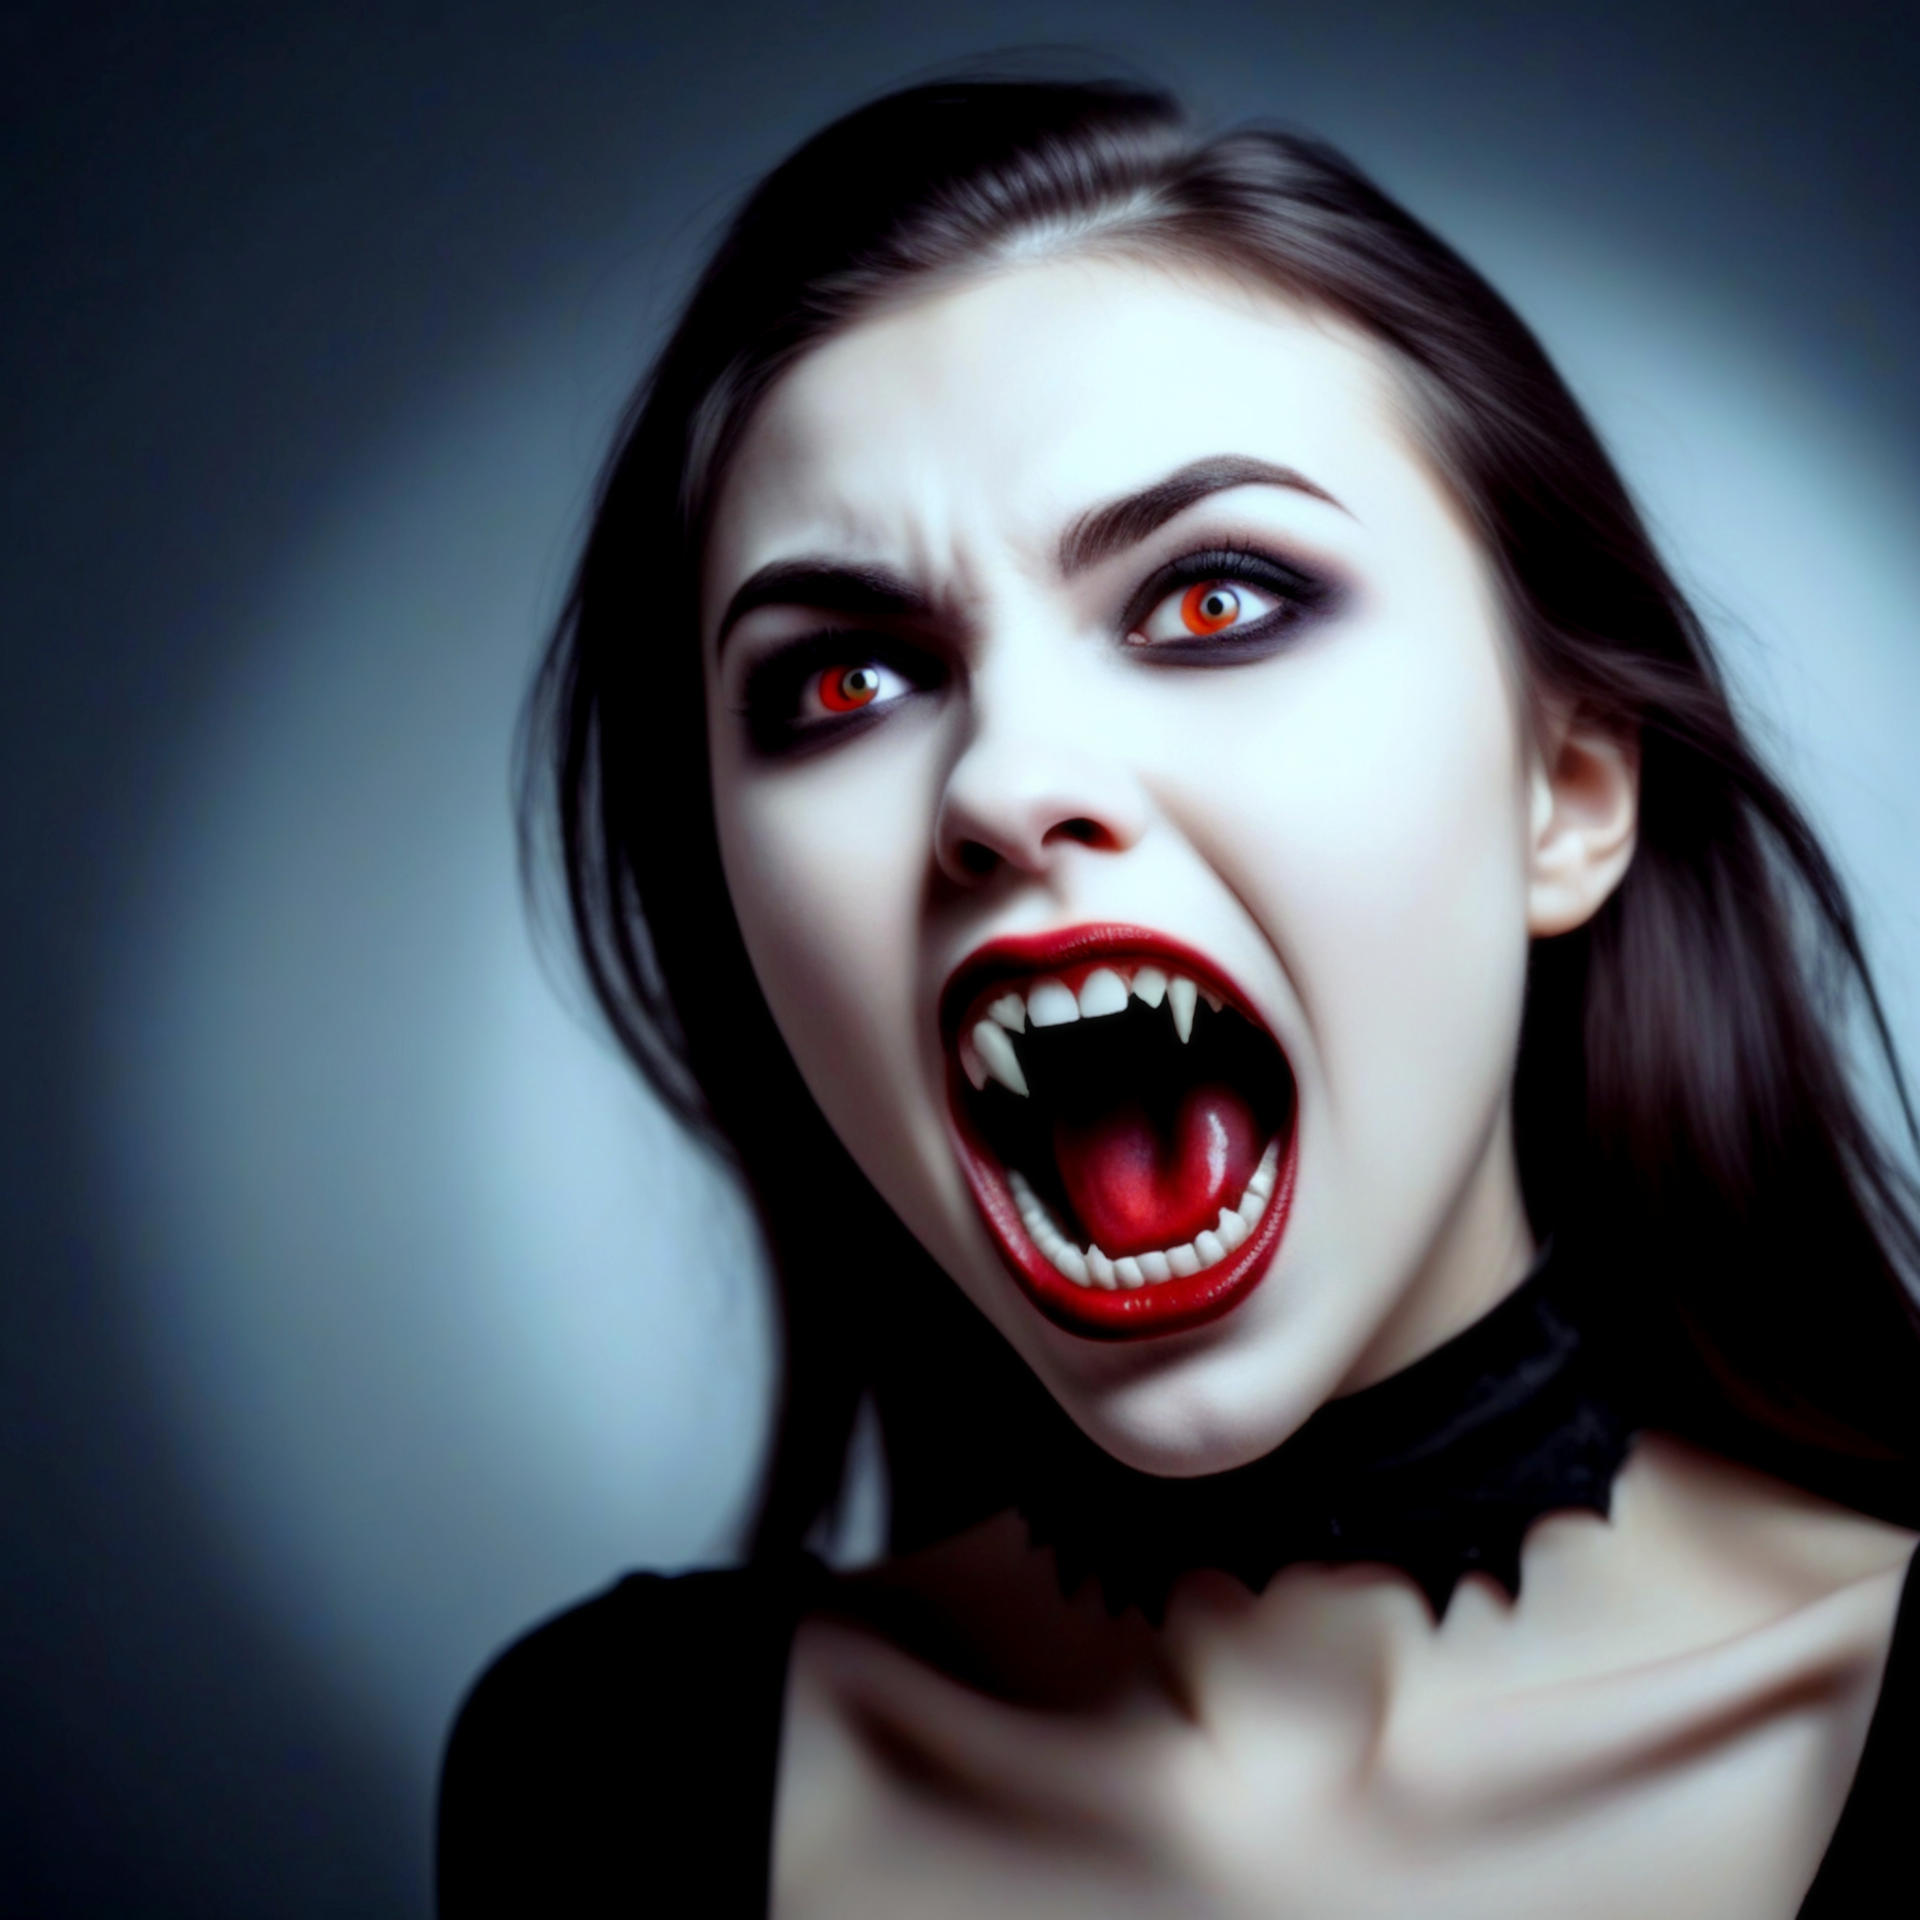 Vampiress Fangs by dukenemo on DeviantArt